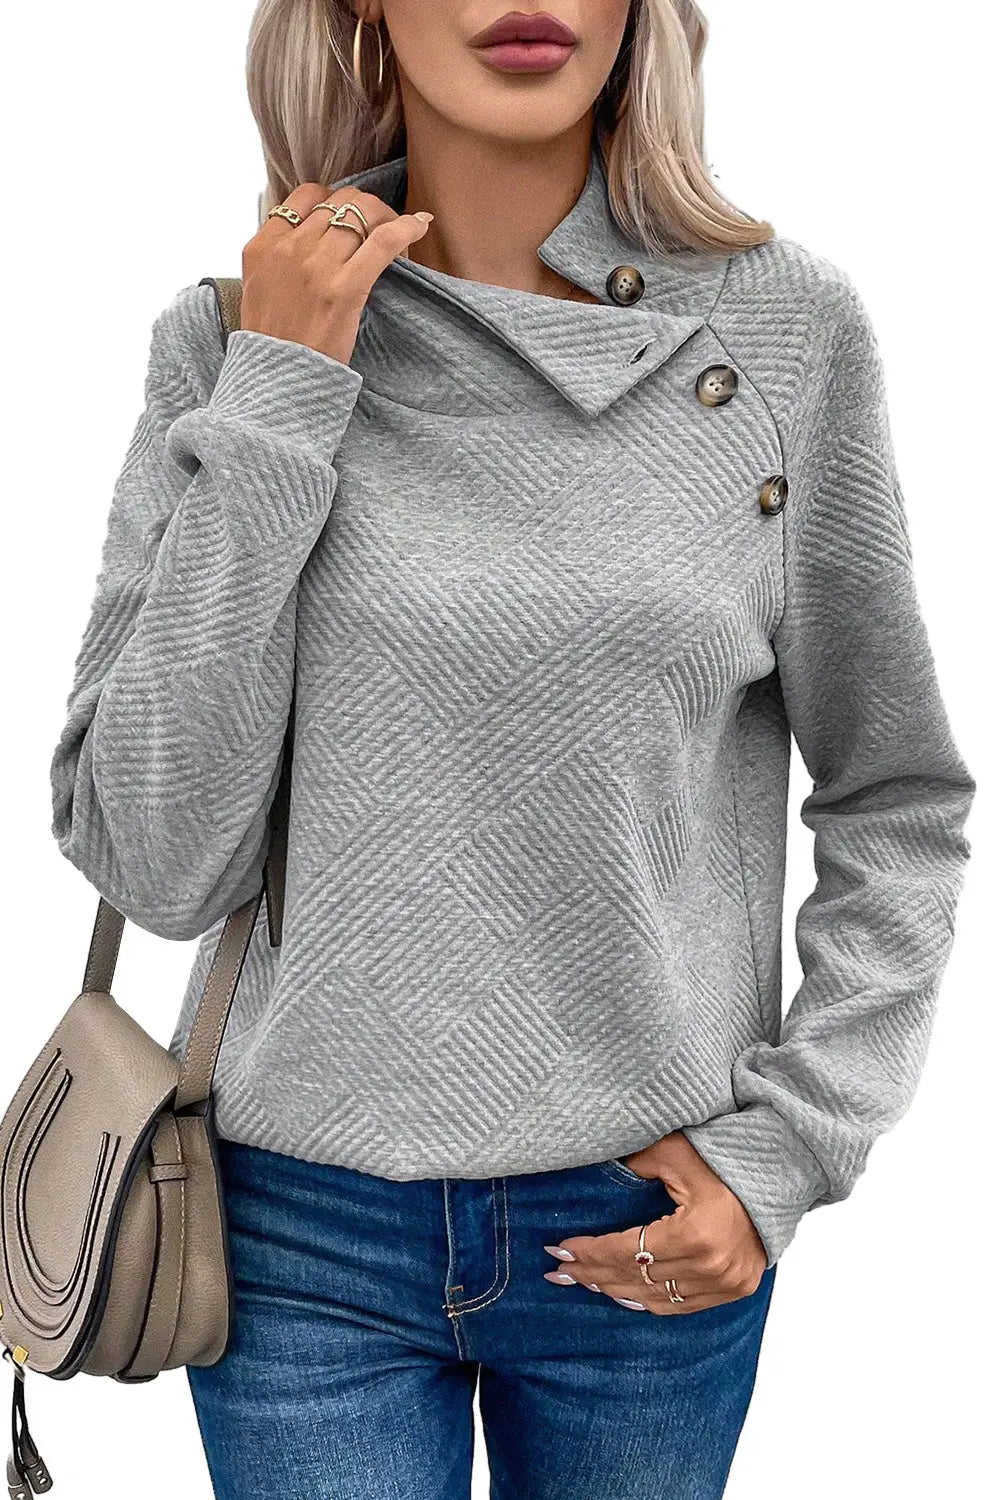 Gray asymmetric buttons detail high neck textured sweatshirt - tops